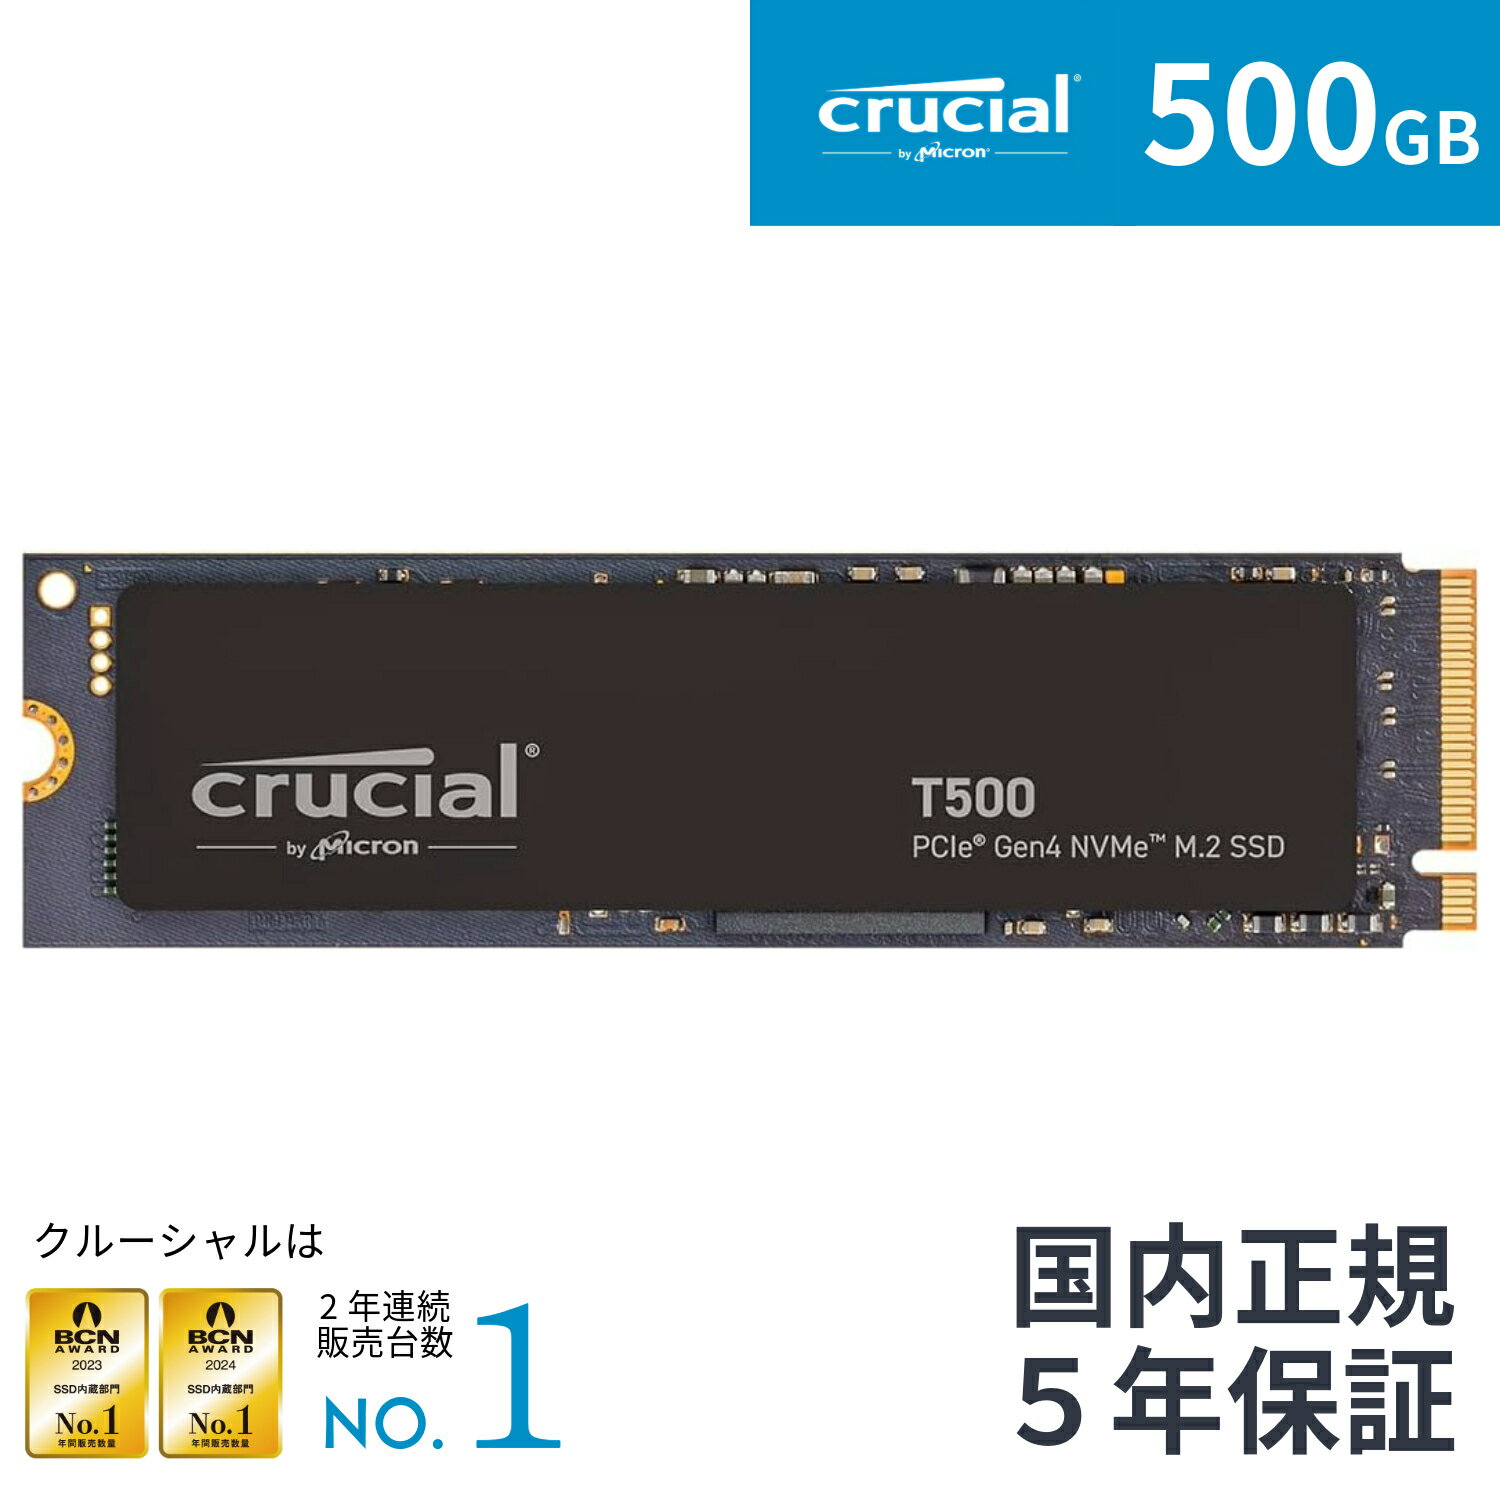 【国内正規流通品】Crucial T500 【新型PS5 /